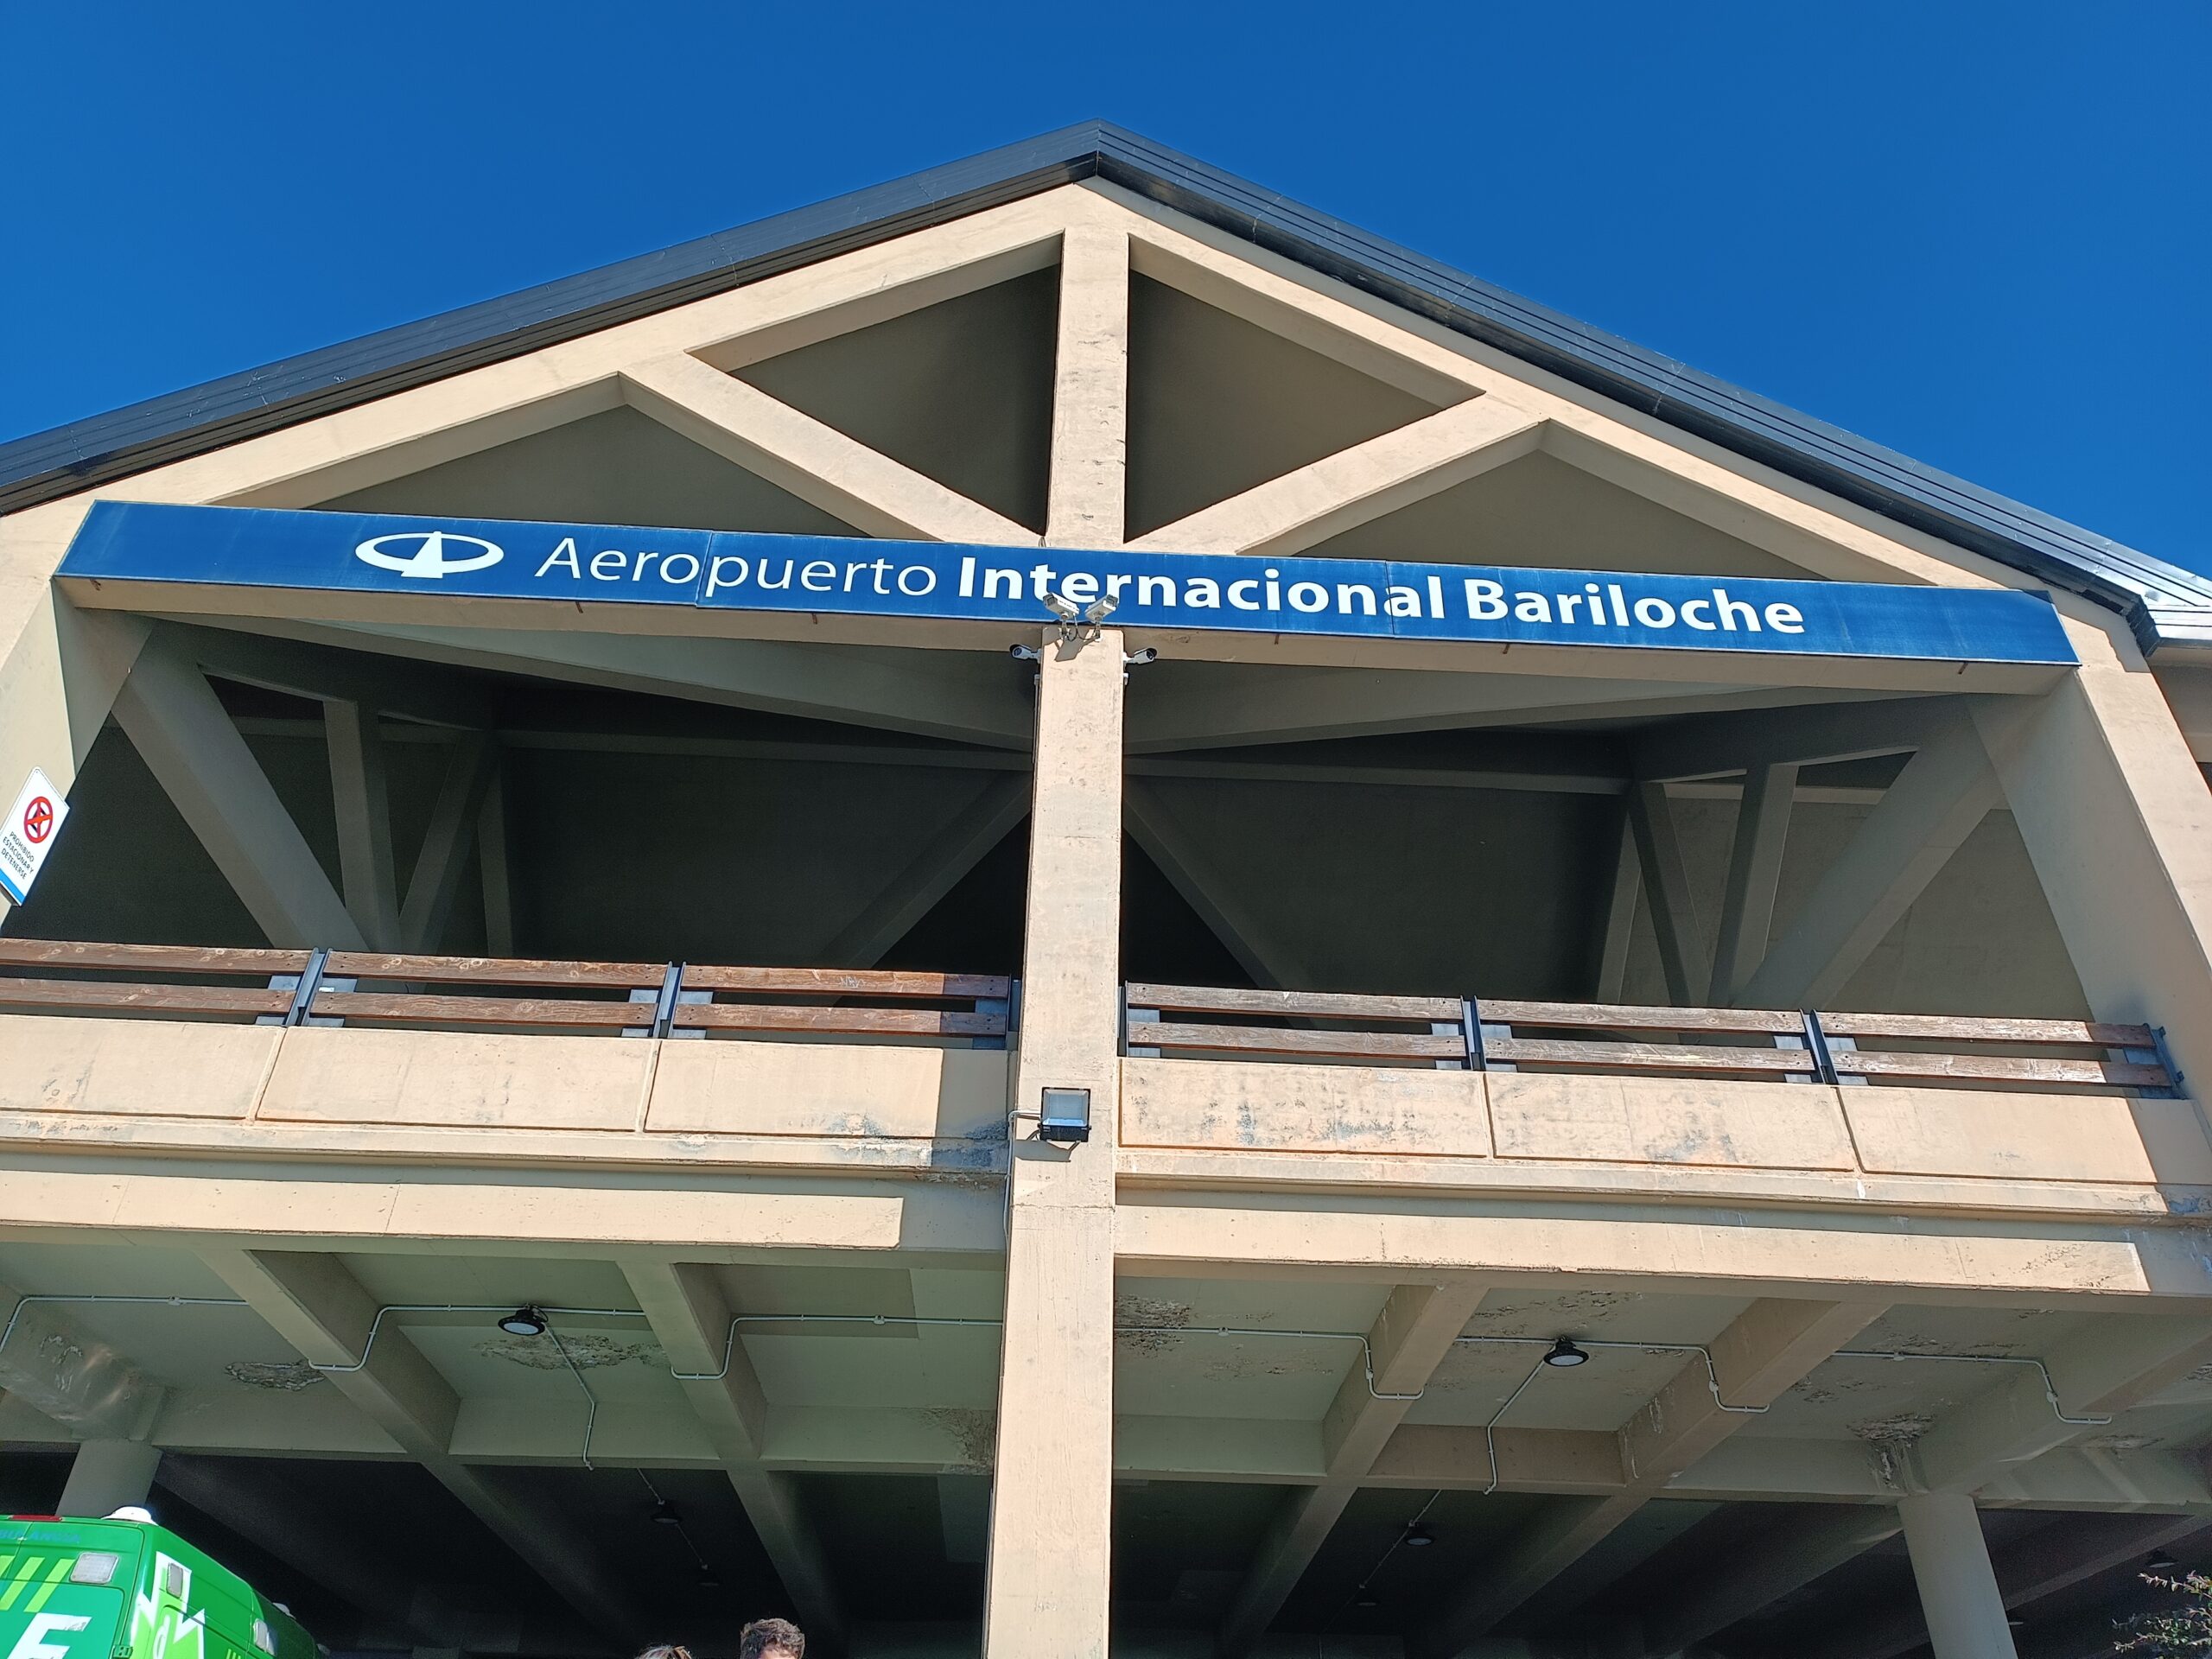 Entrada do aeroporto de bariloche na Argentina.